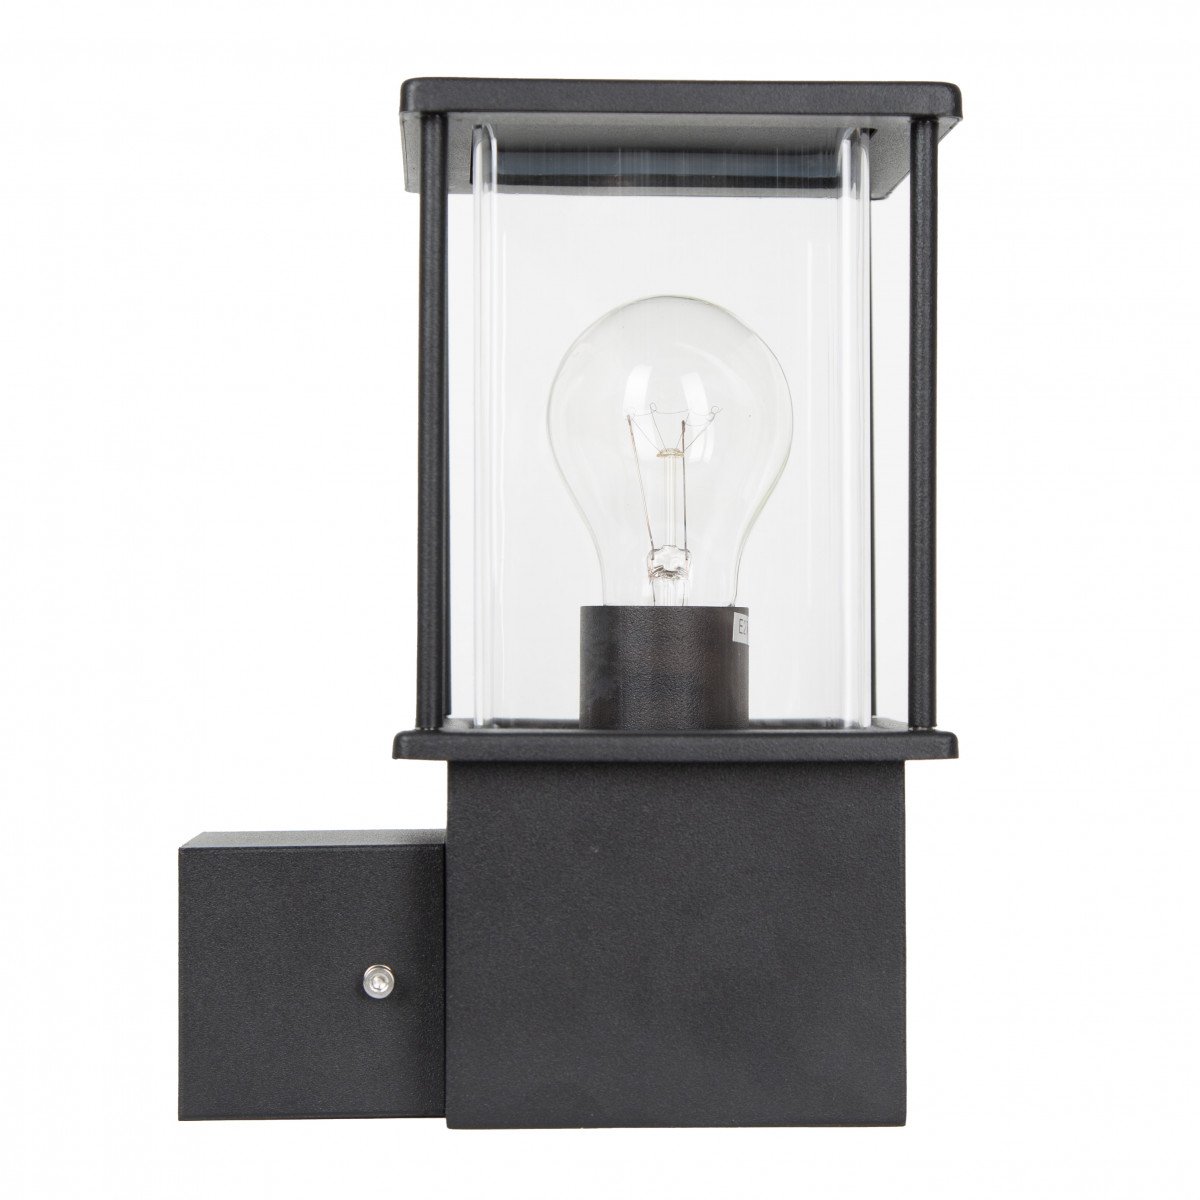 Commandez l'applique d'extérieur Astro 7527, une lampe moderne, avec finition stylée en noir et maintenant une ampoule LED gratuite. 